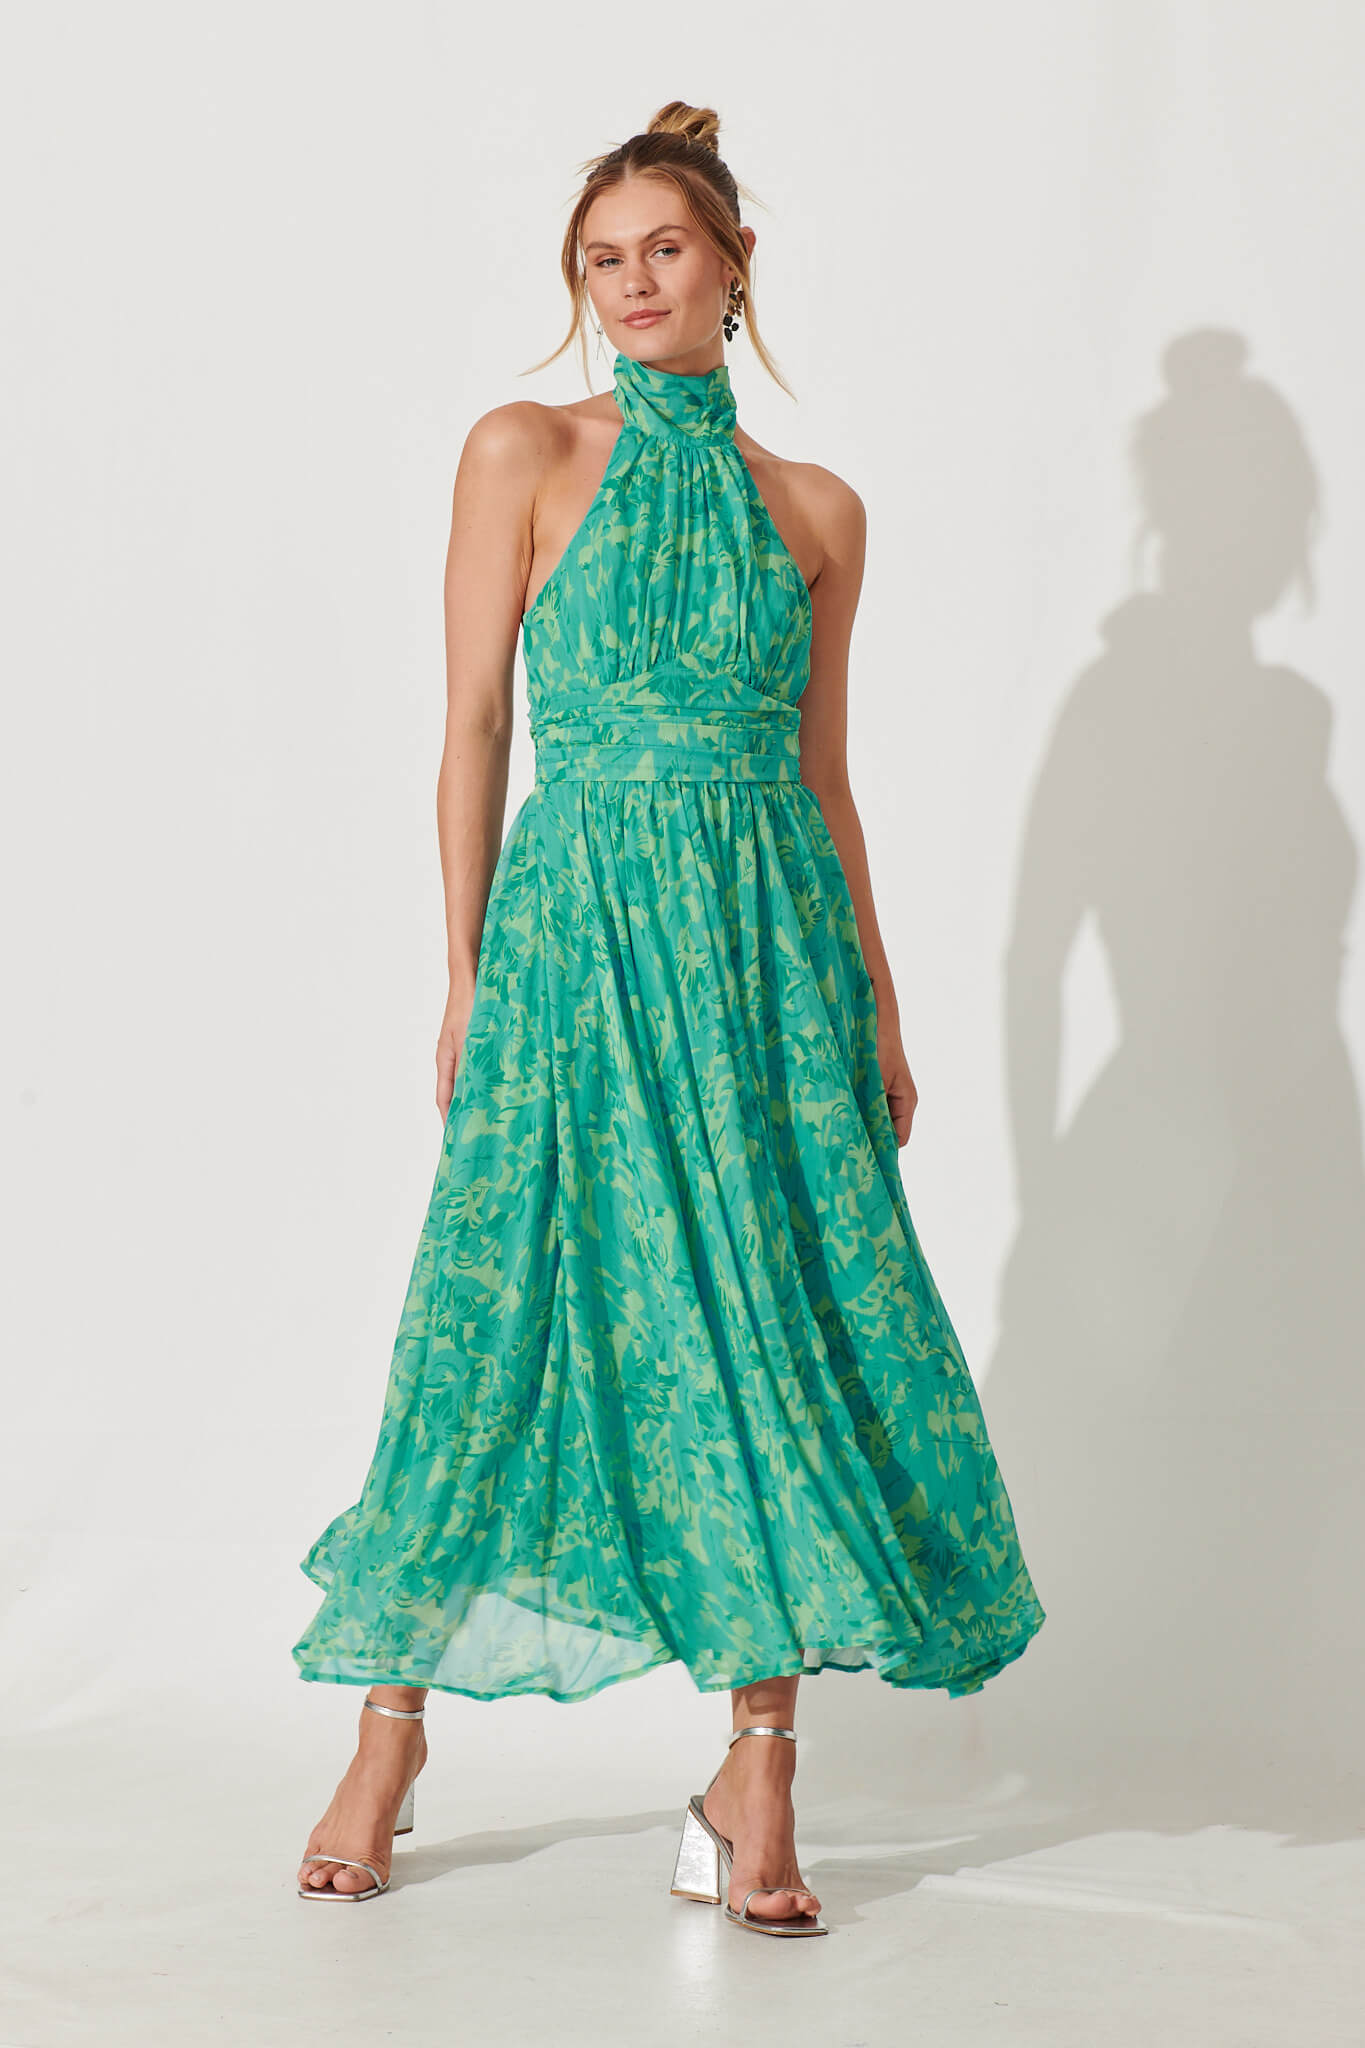 Heartbreaker Halter Neck Maxi Dress In Green Floral Chiffon – St Frock